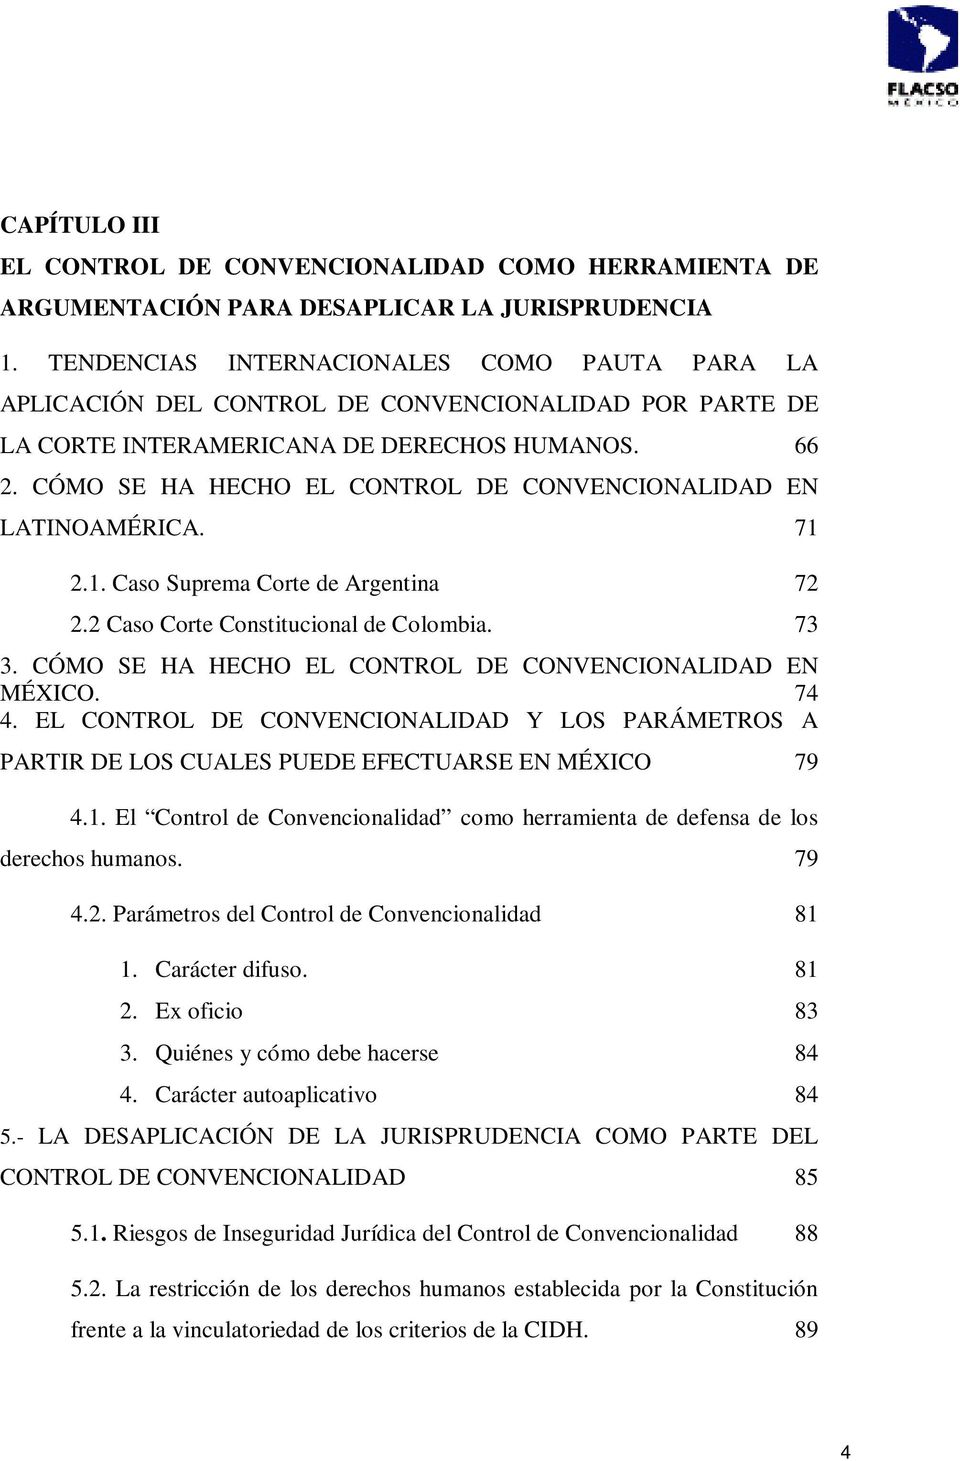 CÓMO SE HA HECHO EL CONTROL DE CONVENCIONALIDAD EN LATINOAMÉRICA. 71 2.1. Caso Suprema Corte de Argentina 72 2.2 Caso Corte Constitucional de Colombia. 73 3.